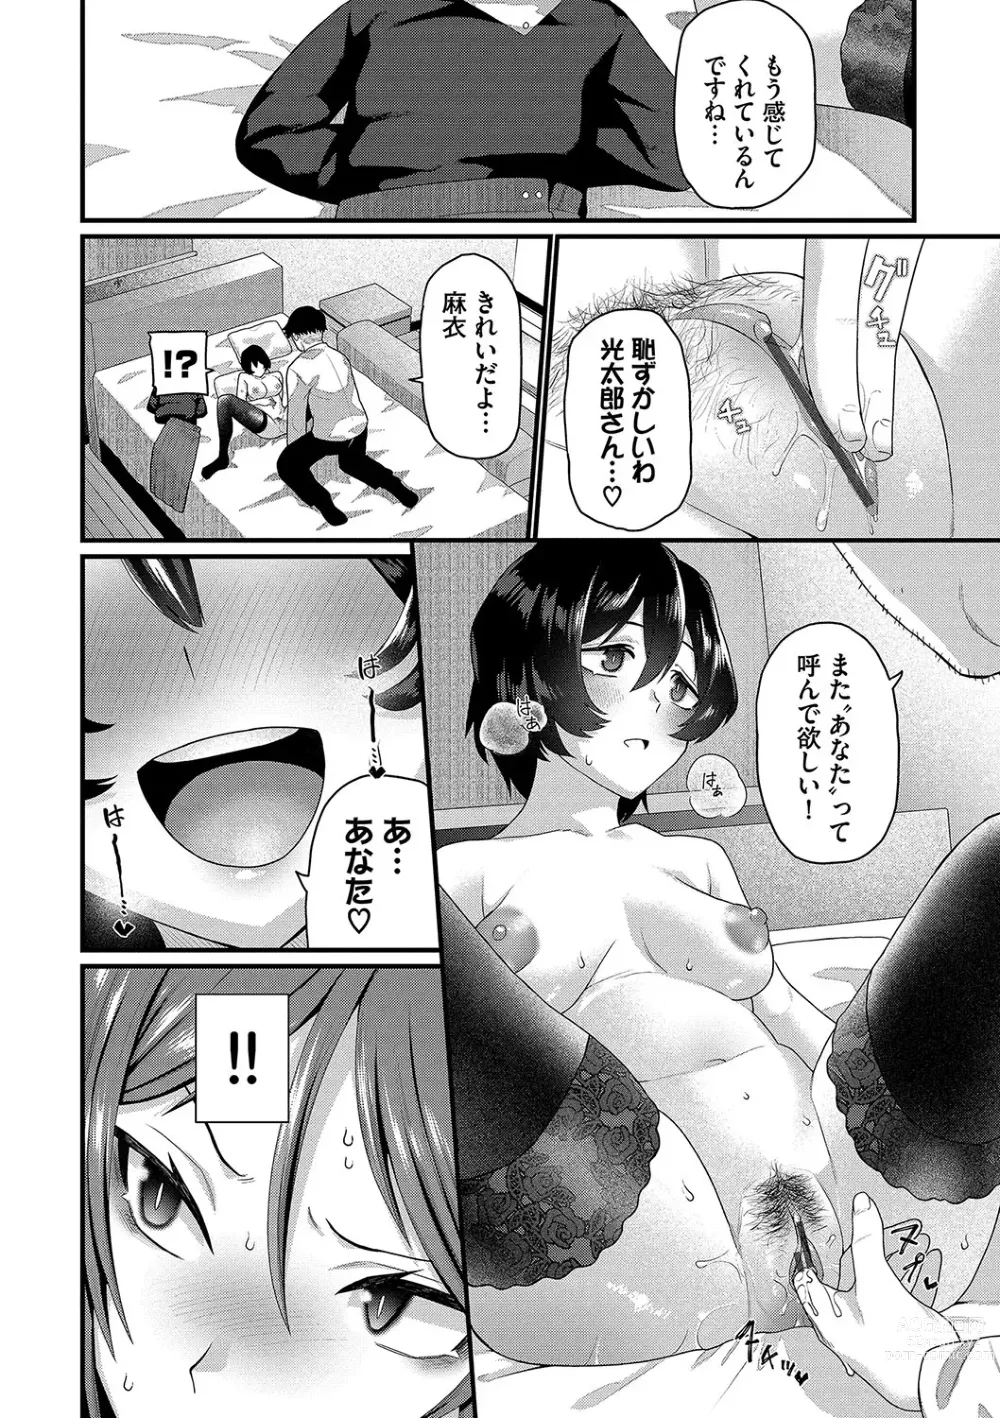 Page 9 of manga Zakoiko